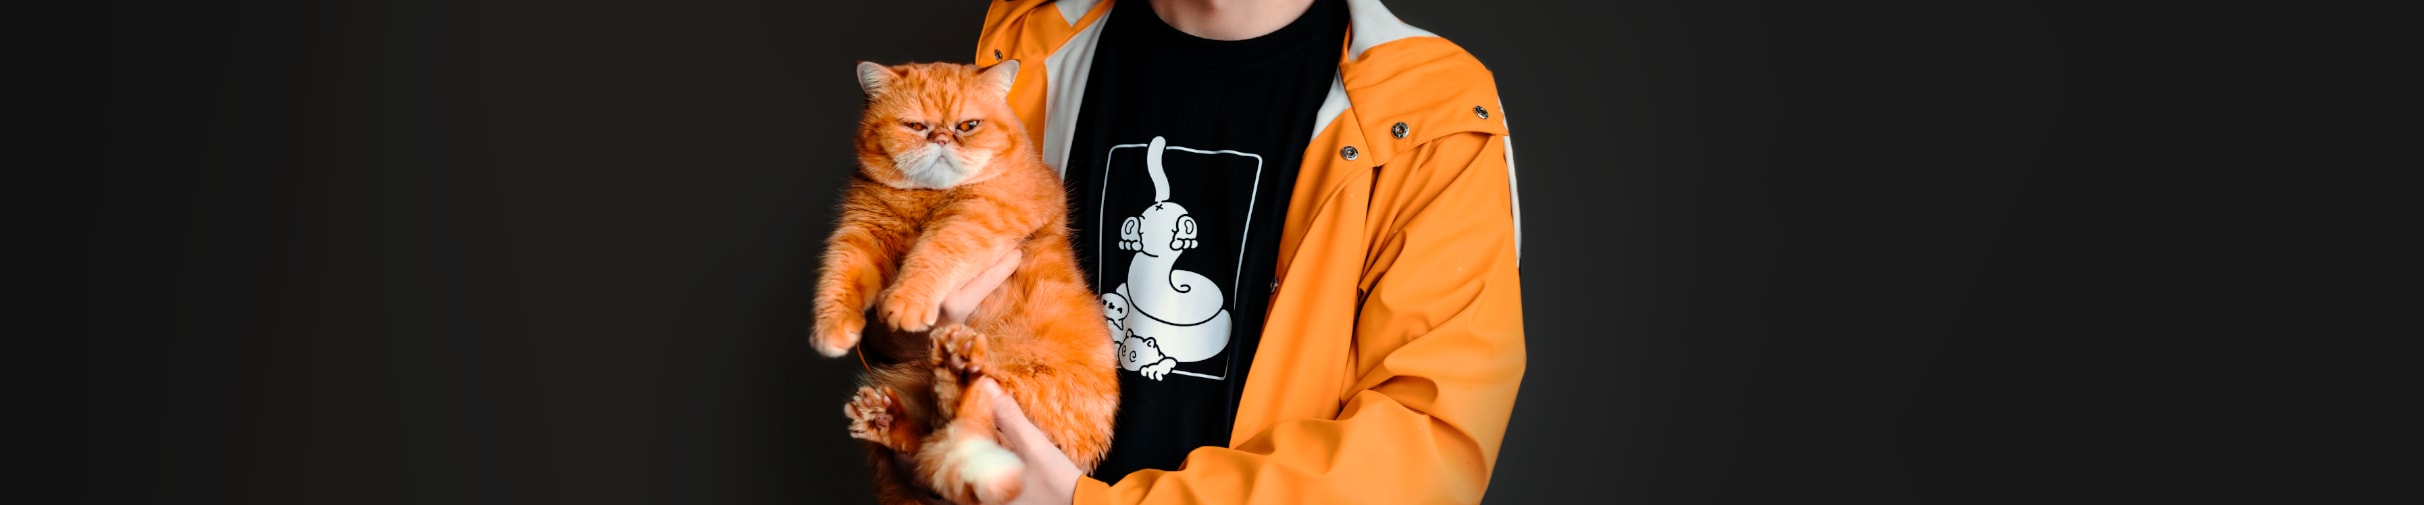 Sansa-kissan fanituotteet nyt myynnissä! | Hel Goods